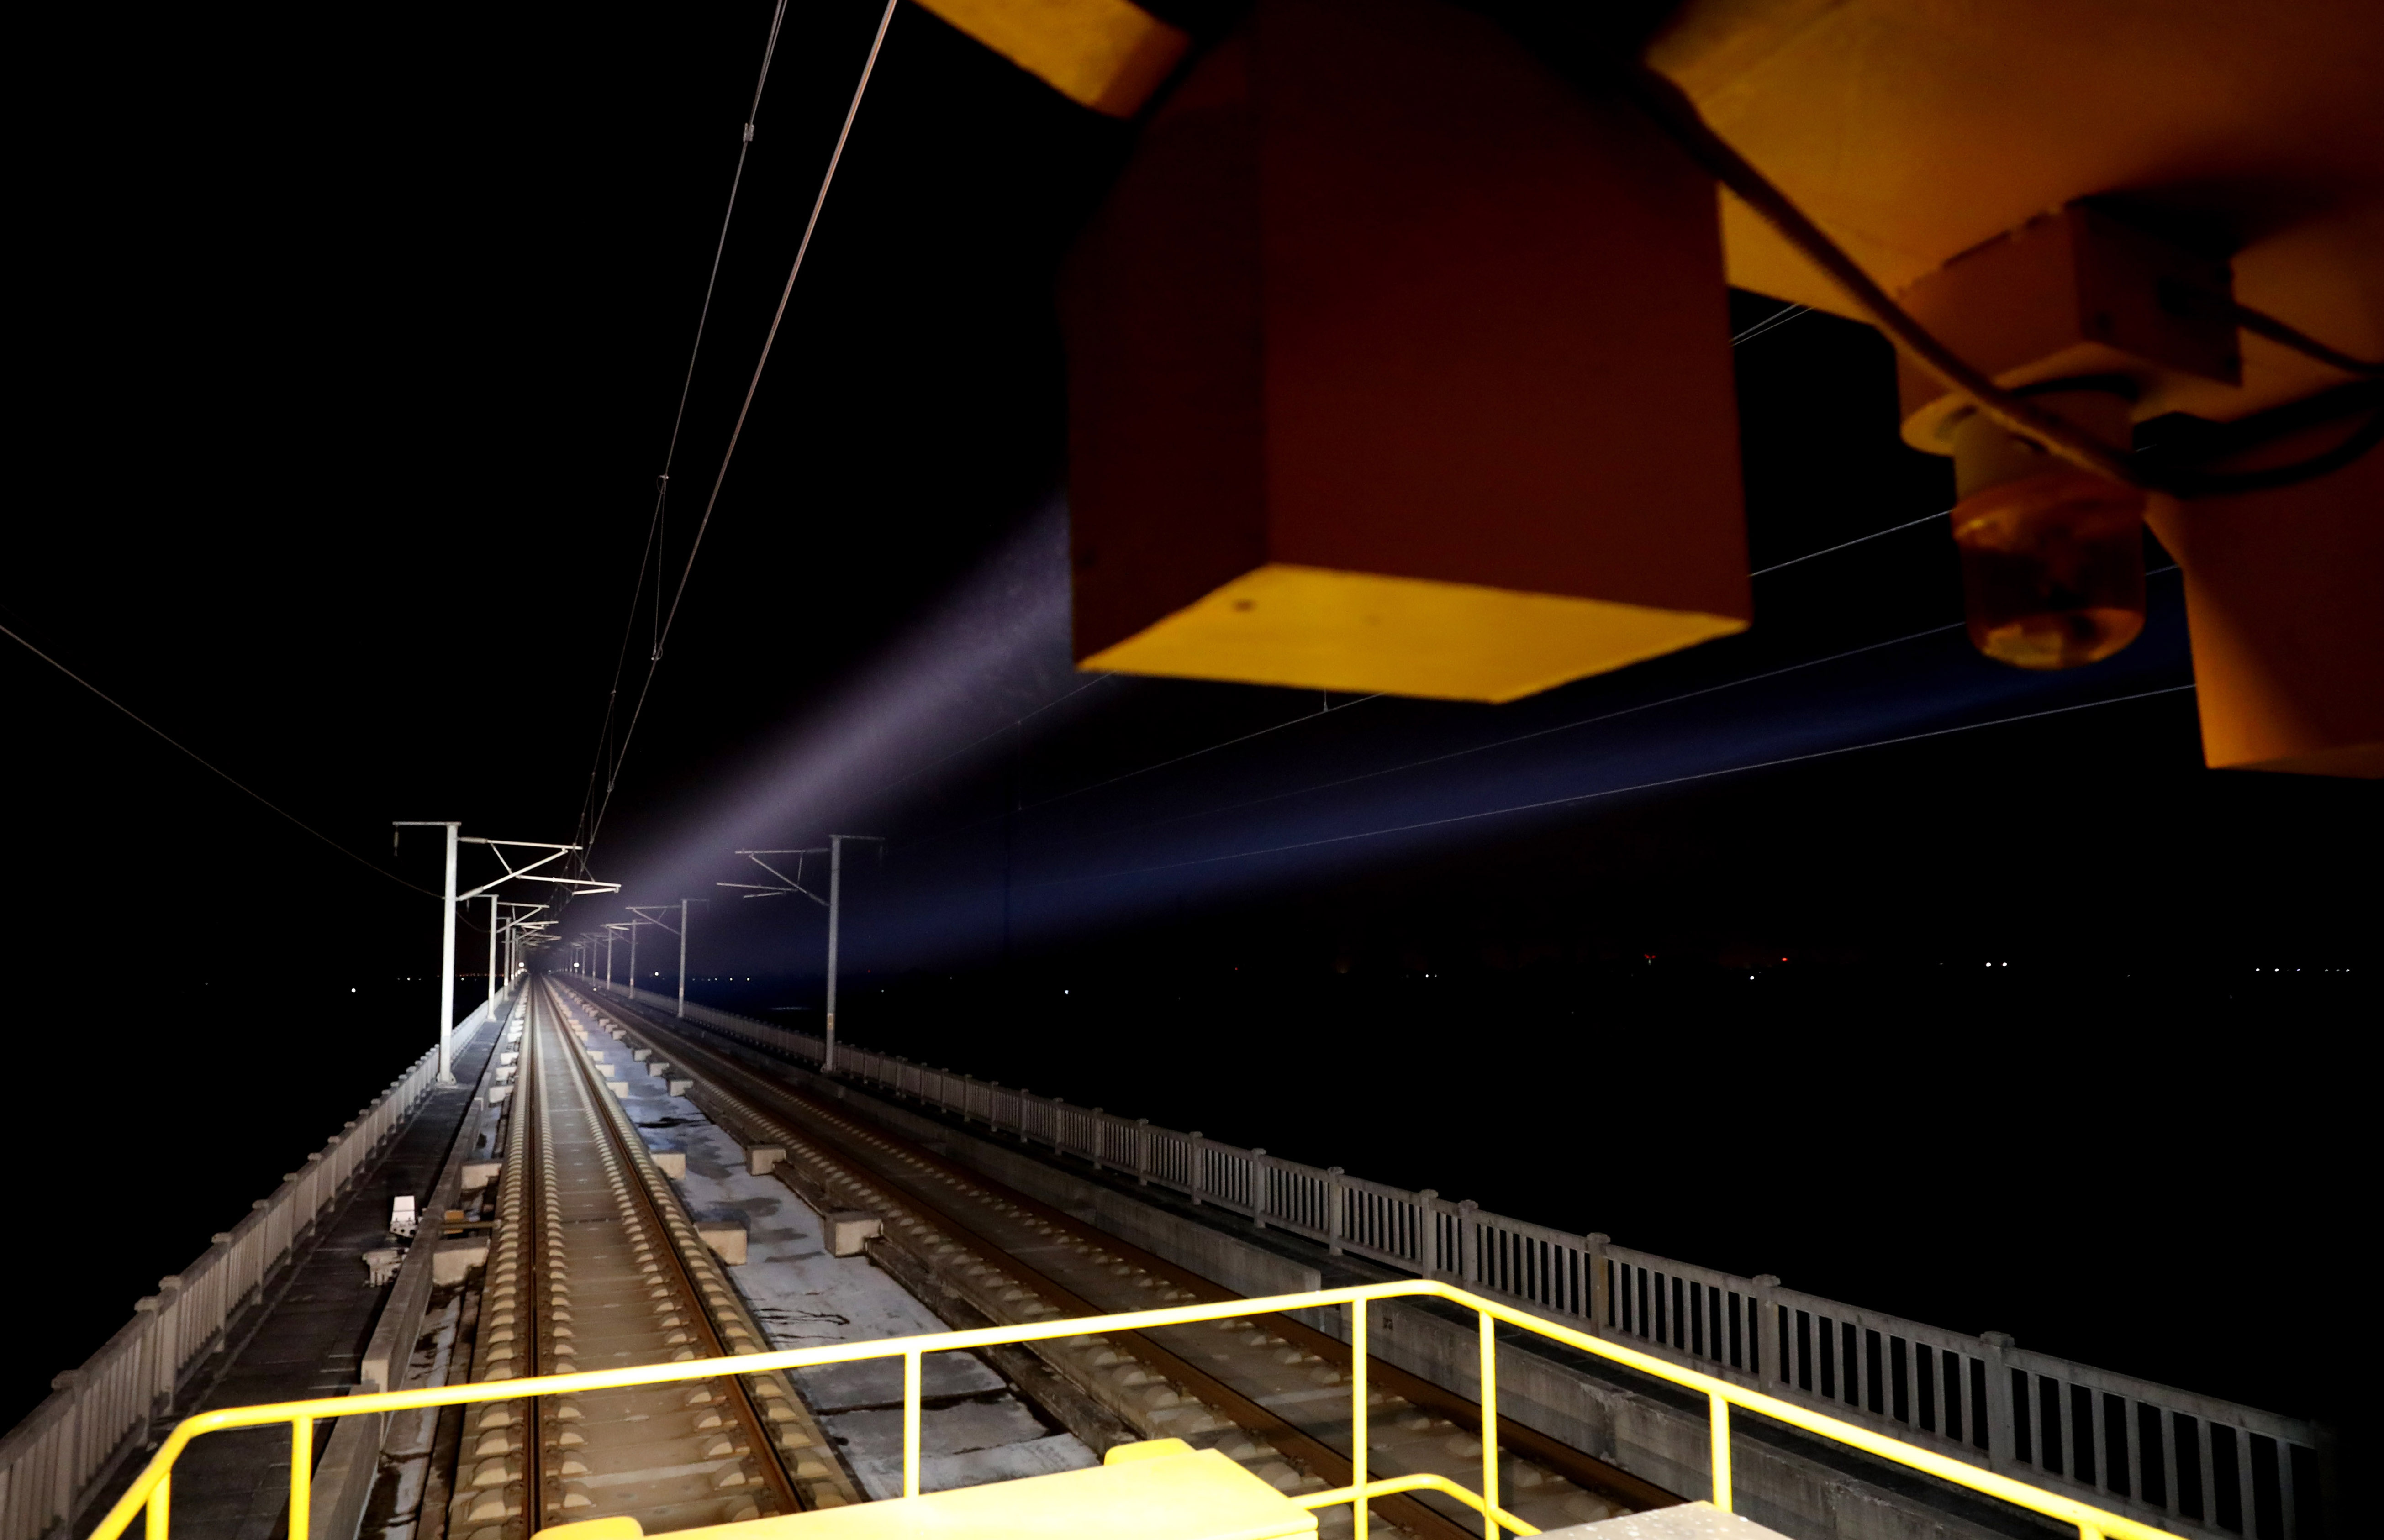 1月30日,巡检车照明灯将前方一段铁路线照亮.